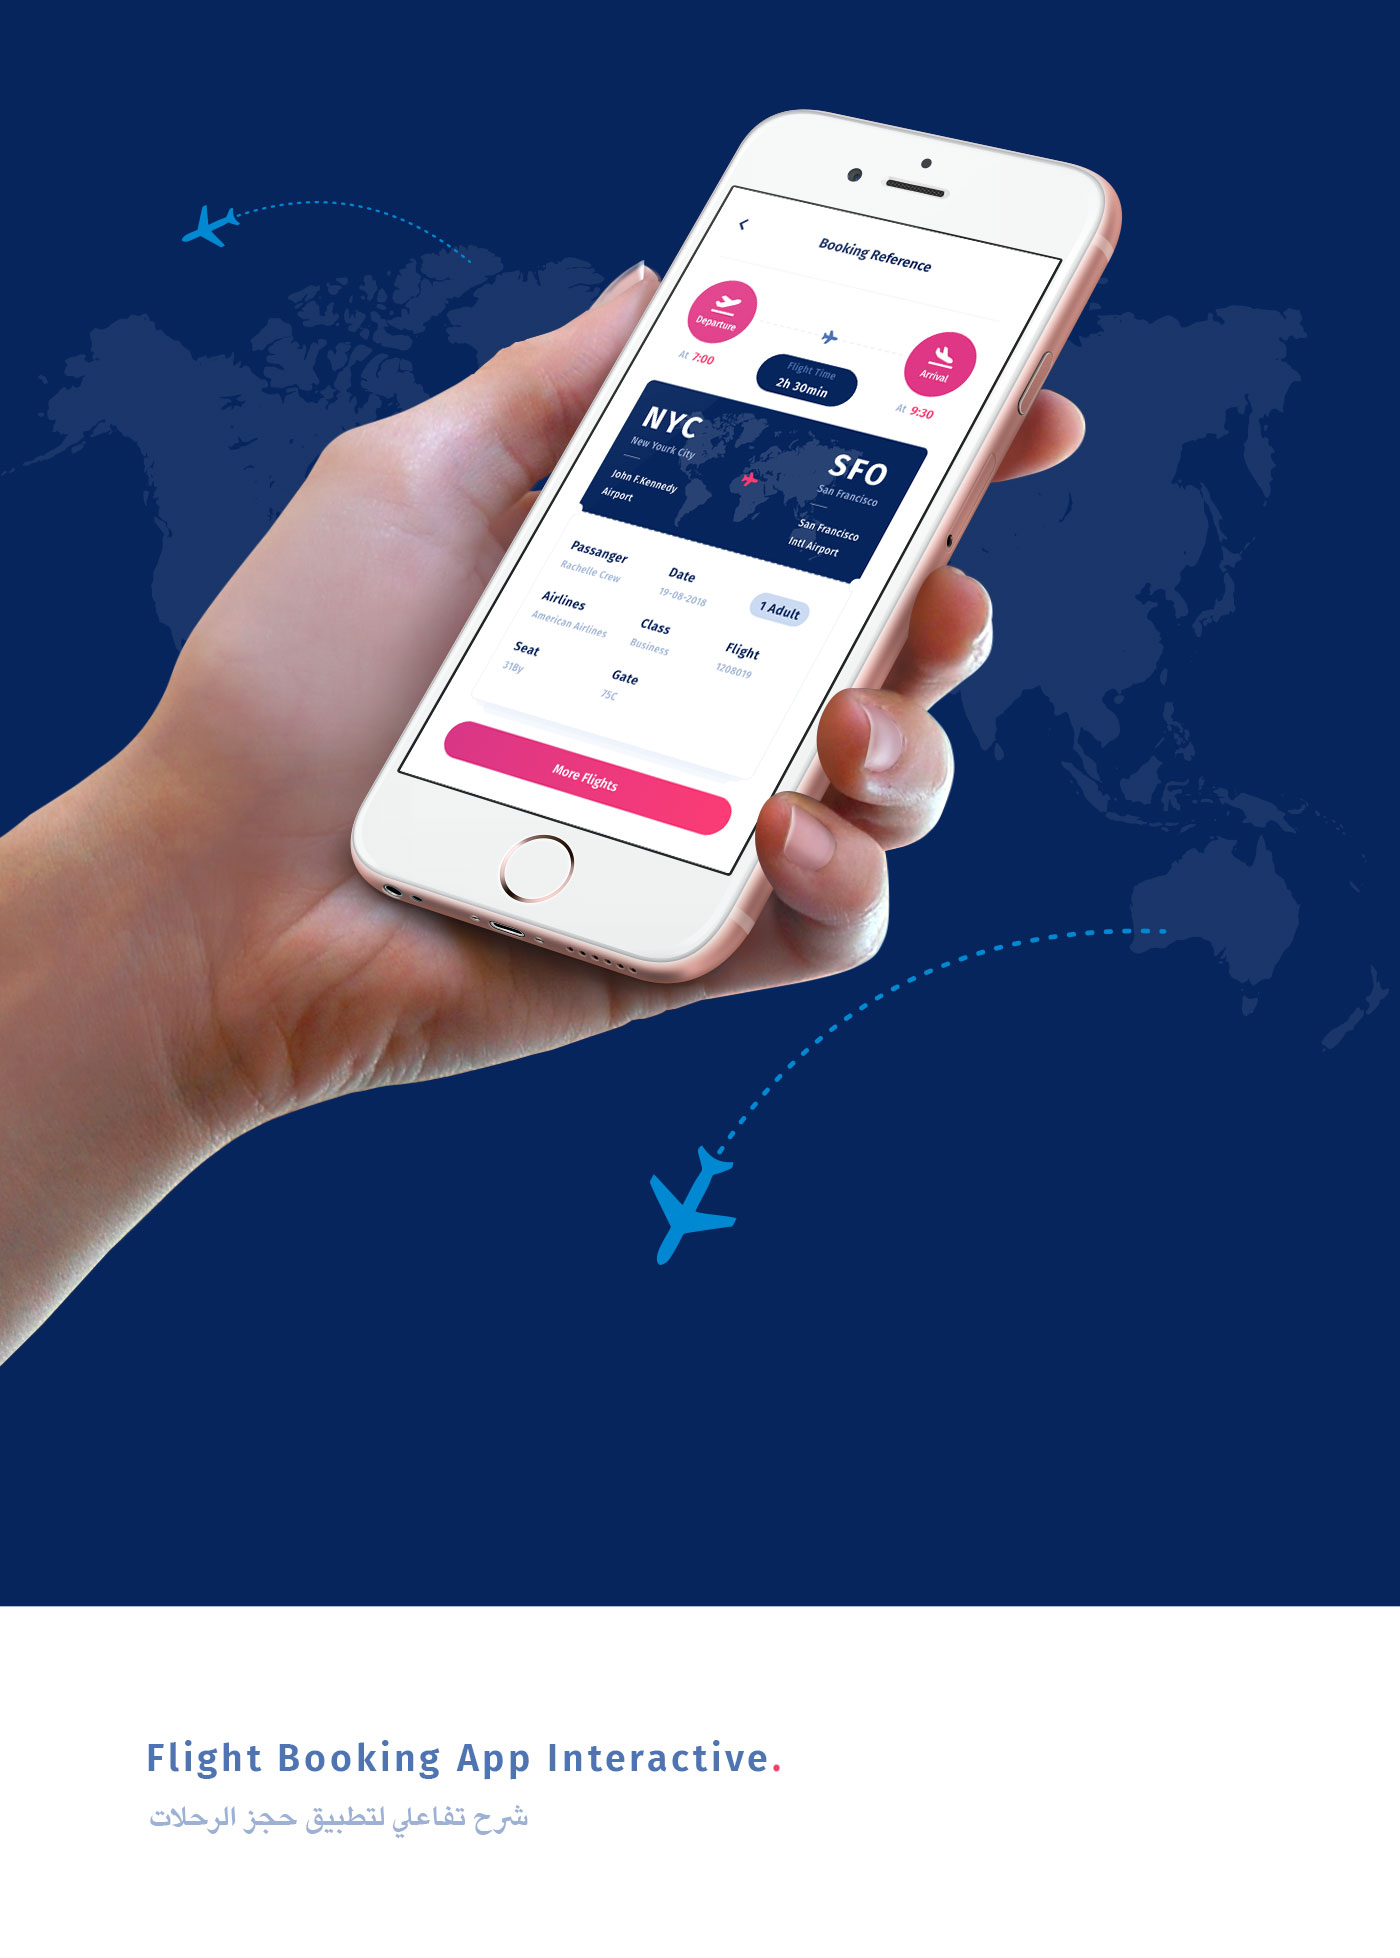 Adobe XD UI Booking flight Flight app booking app ui flight ui booking Travel